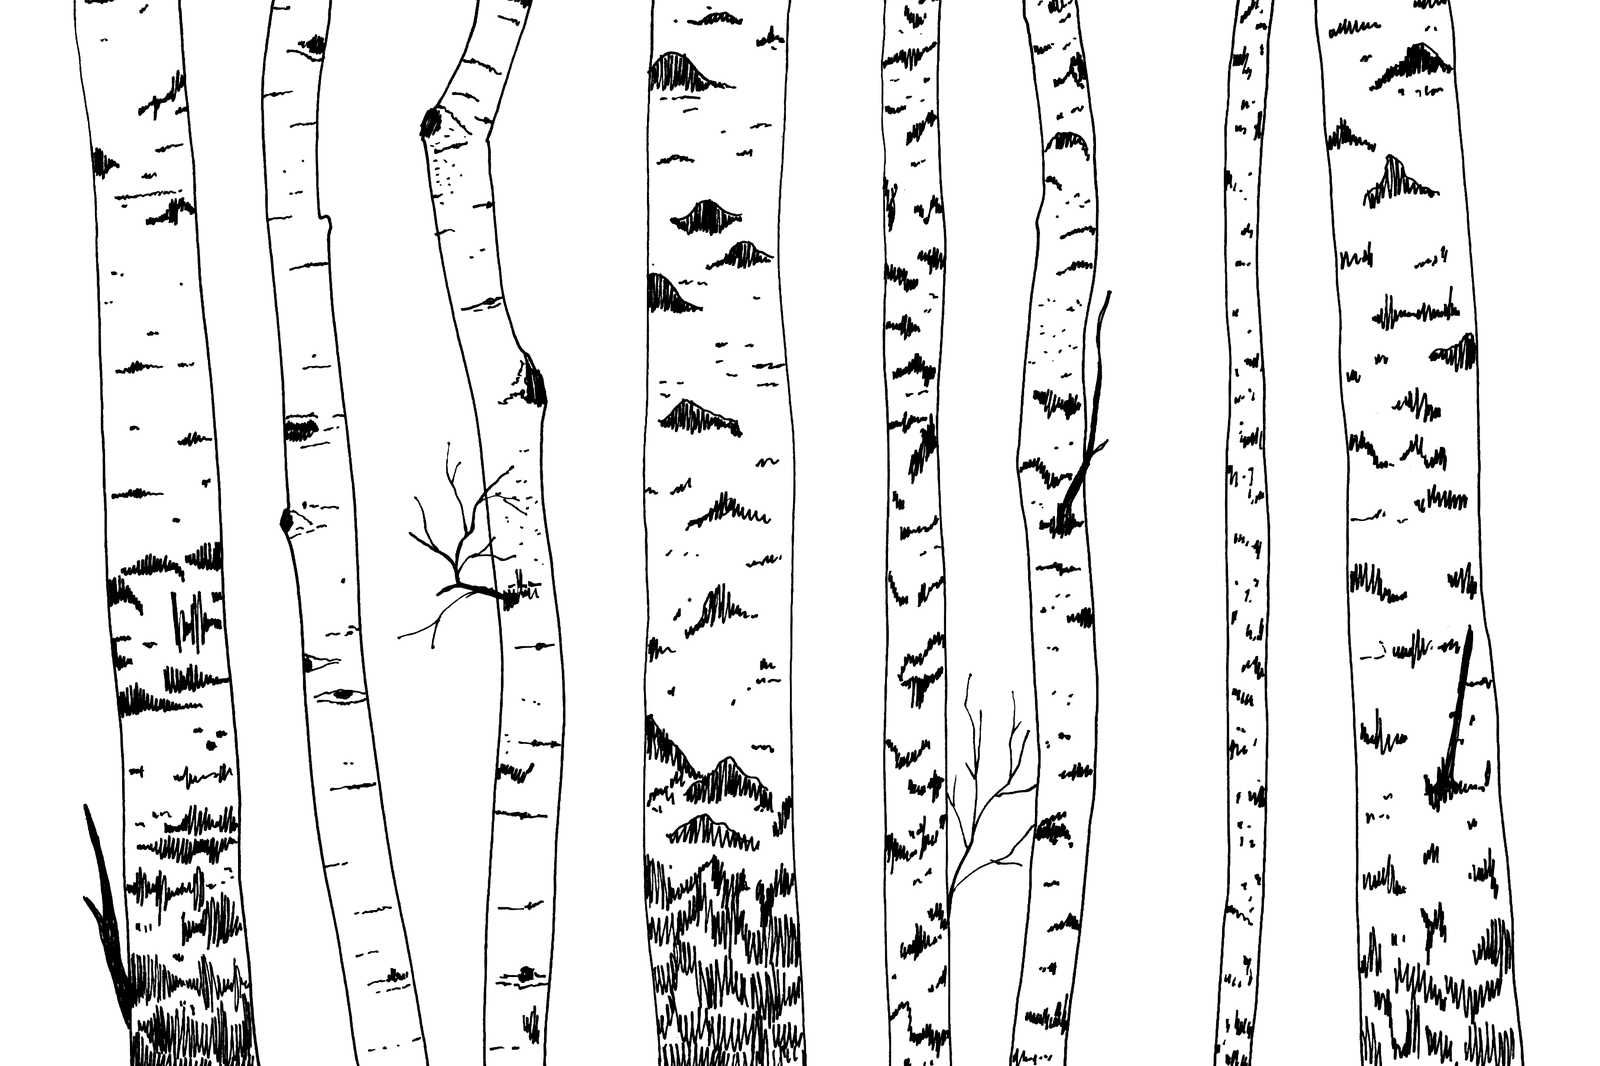             Leinwand gezeichneter Birkenwald – 90 cm x 60 cm
        